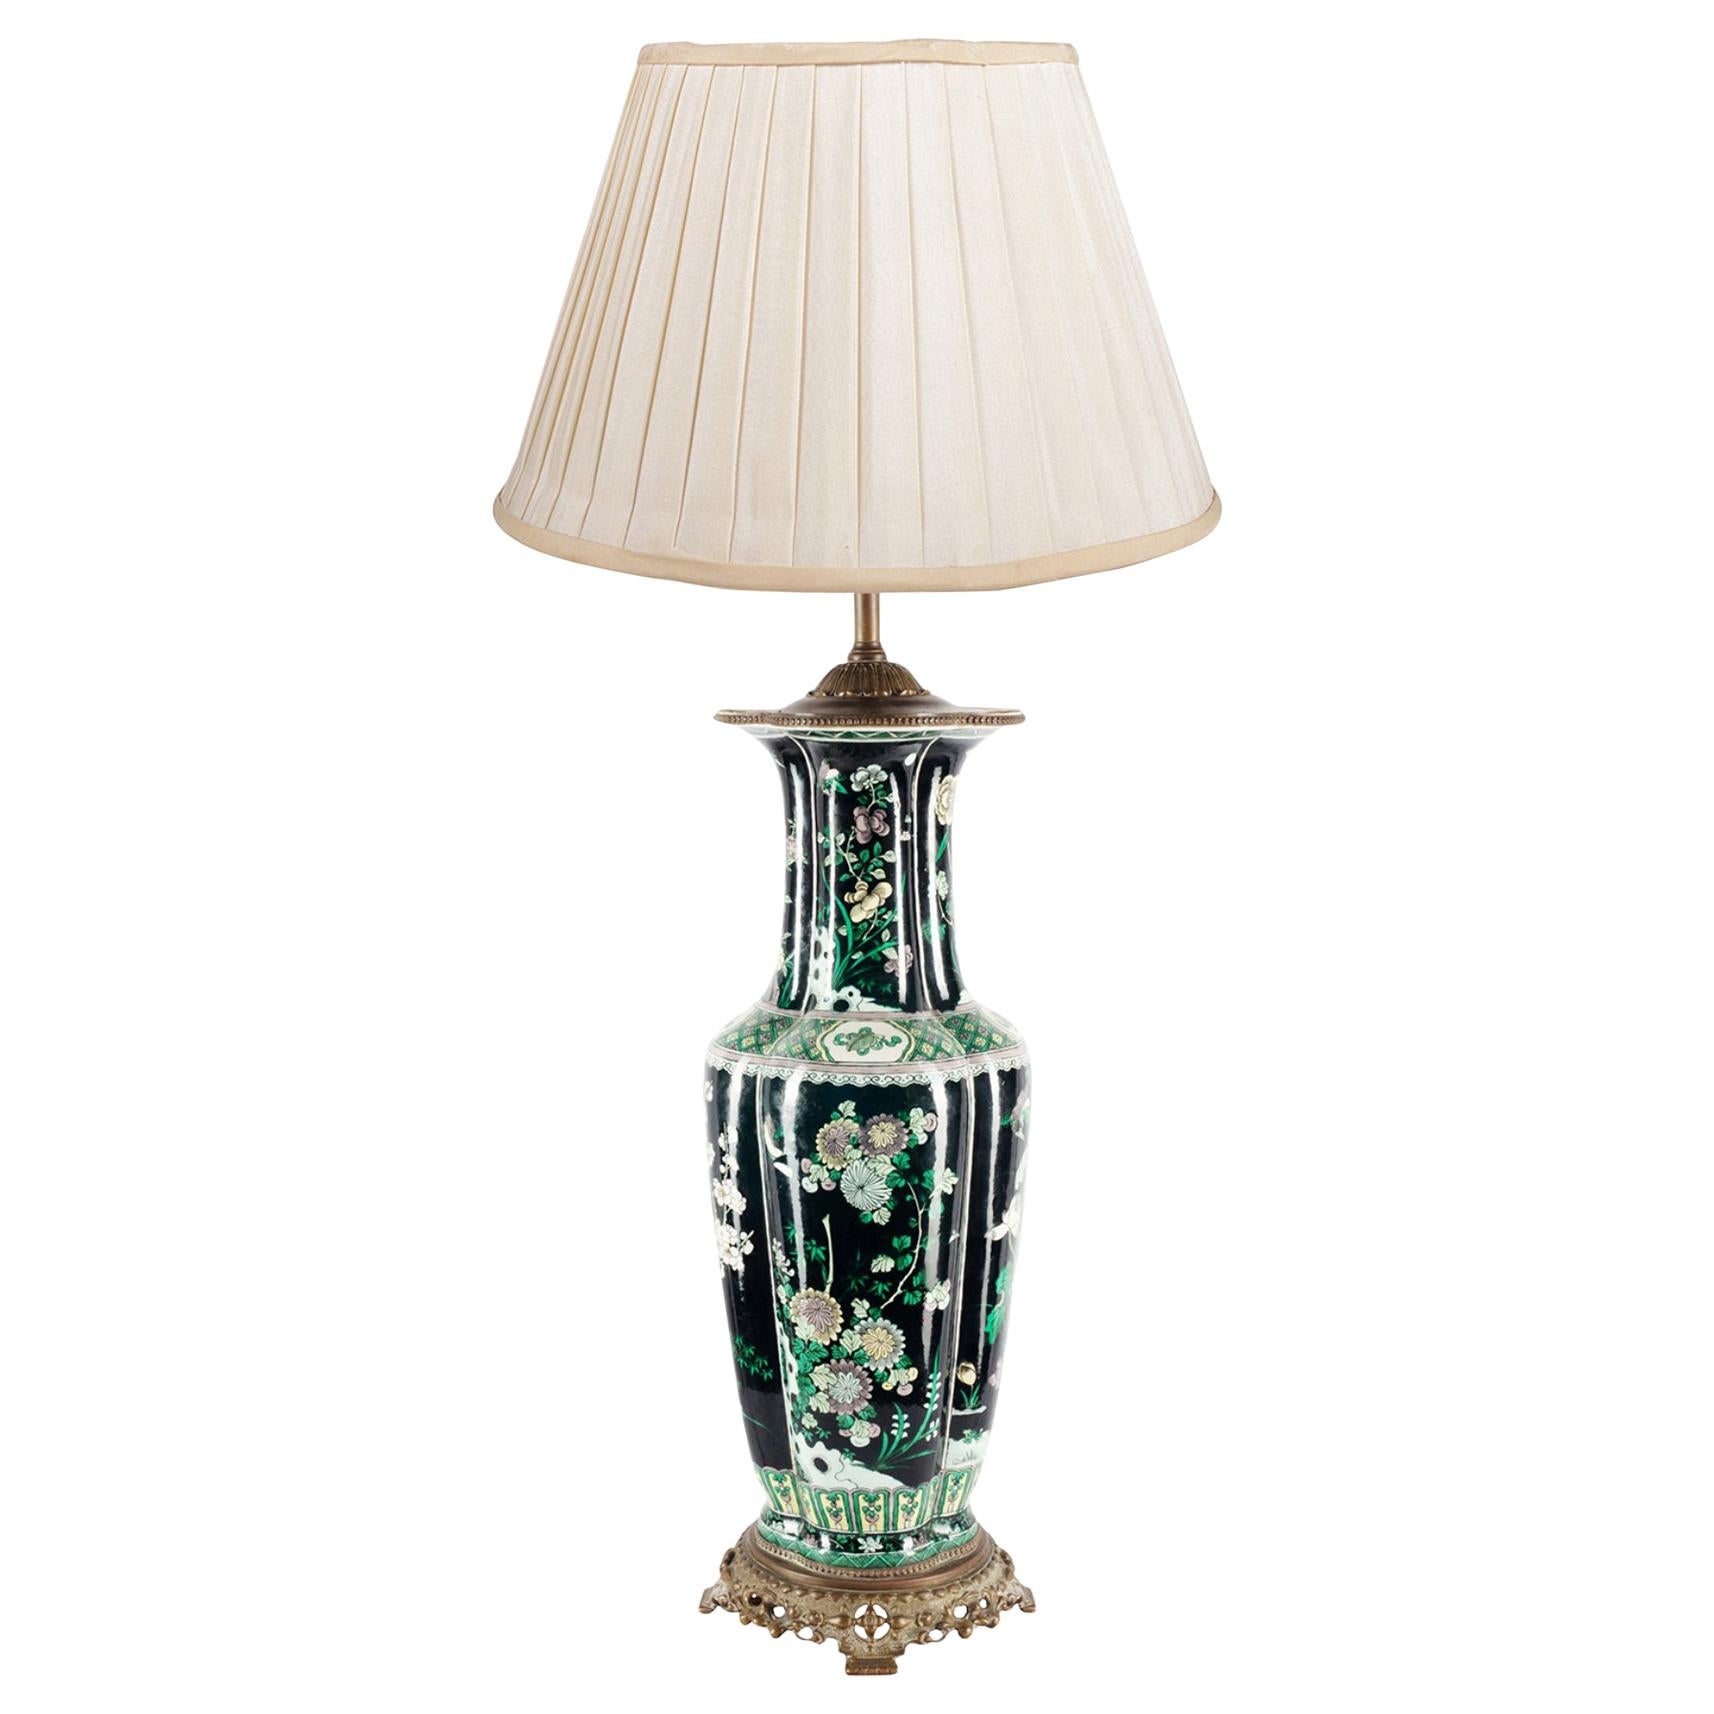 Chinesische Famille Noire-Vase / Lampe aus dem 19. Jahrhundert